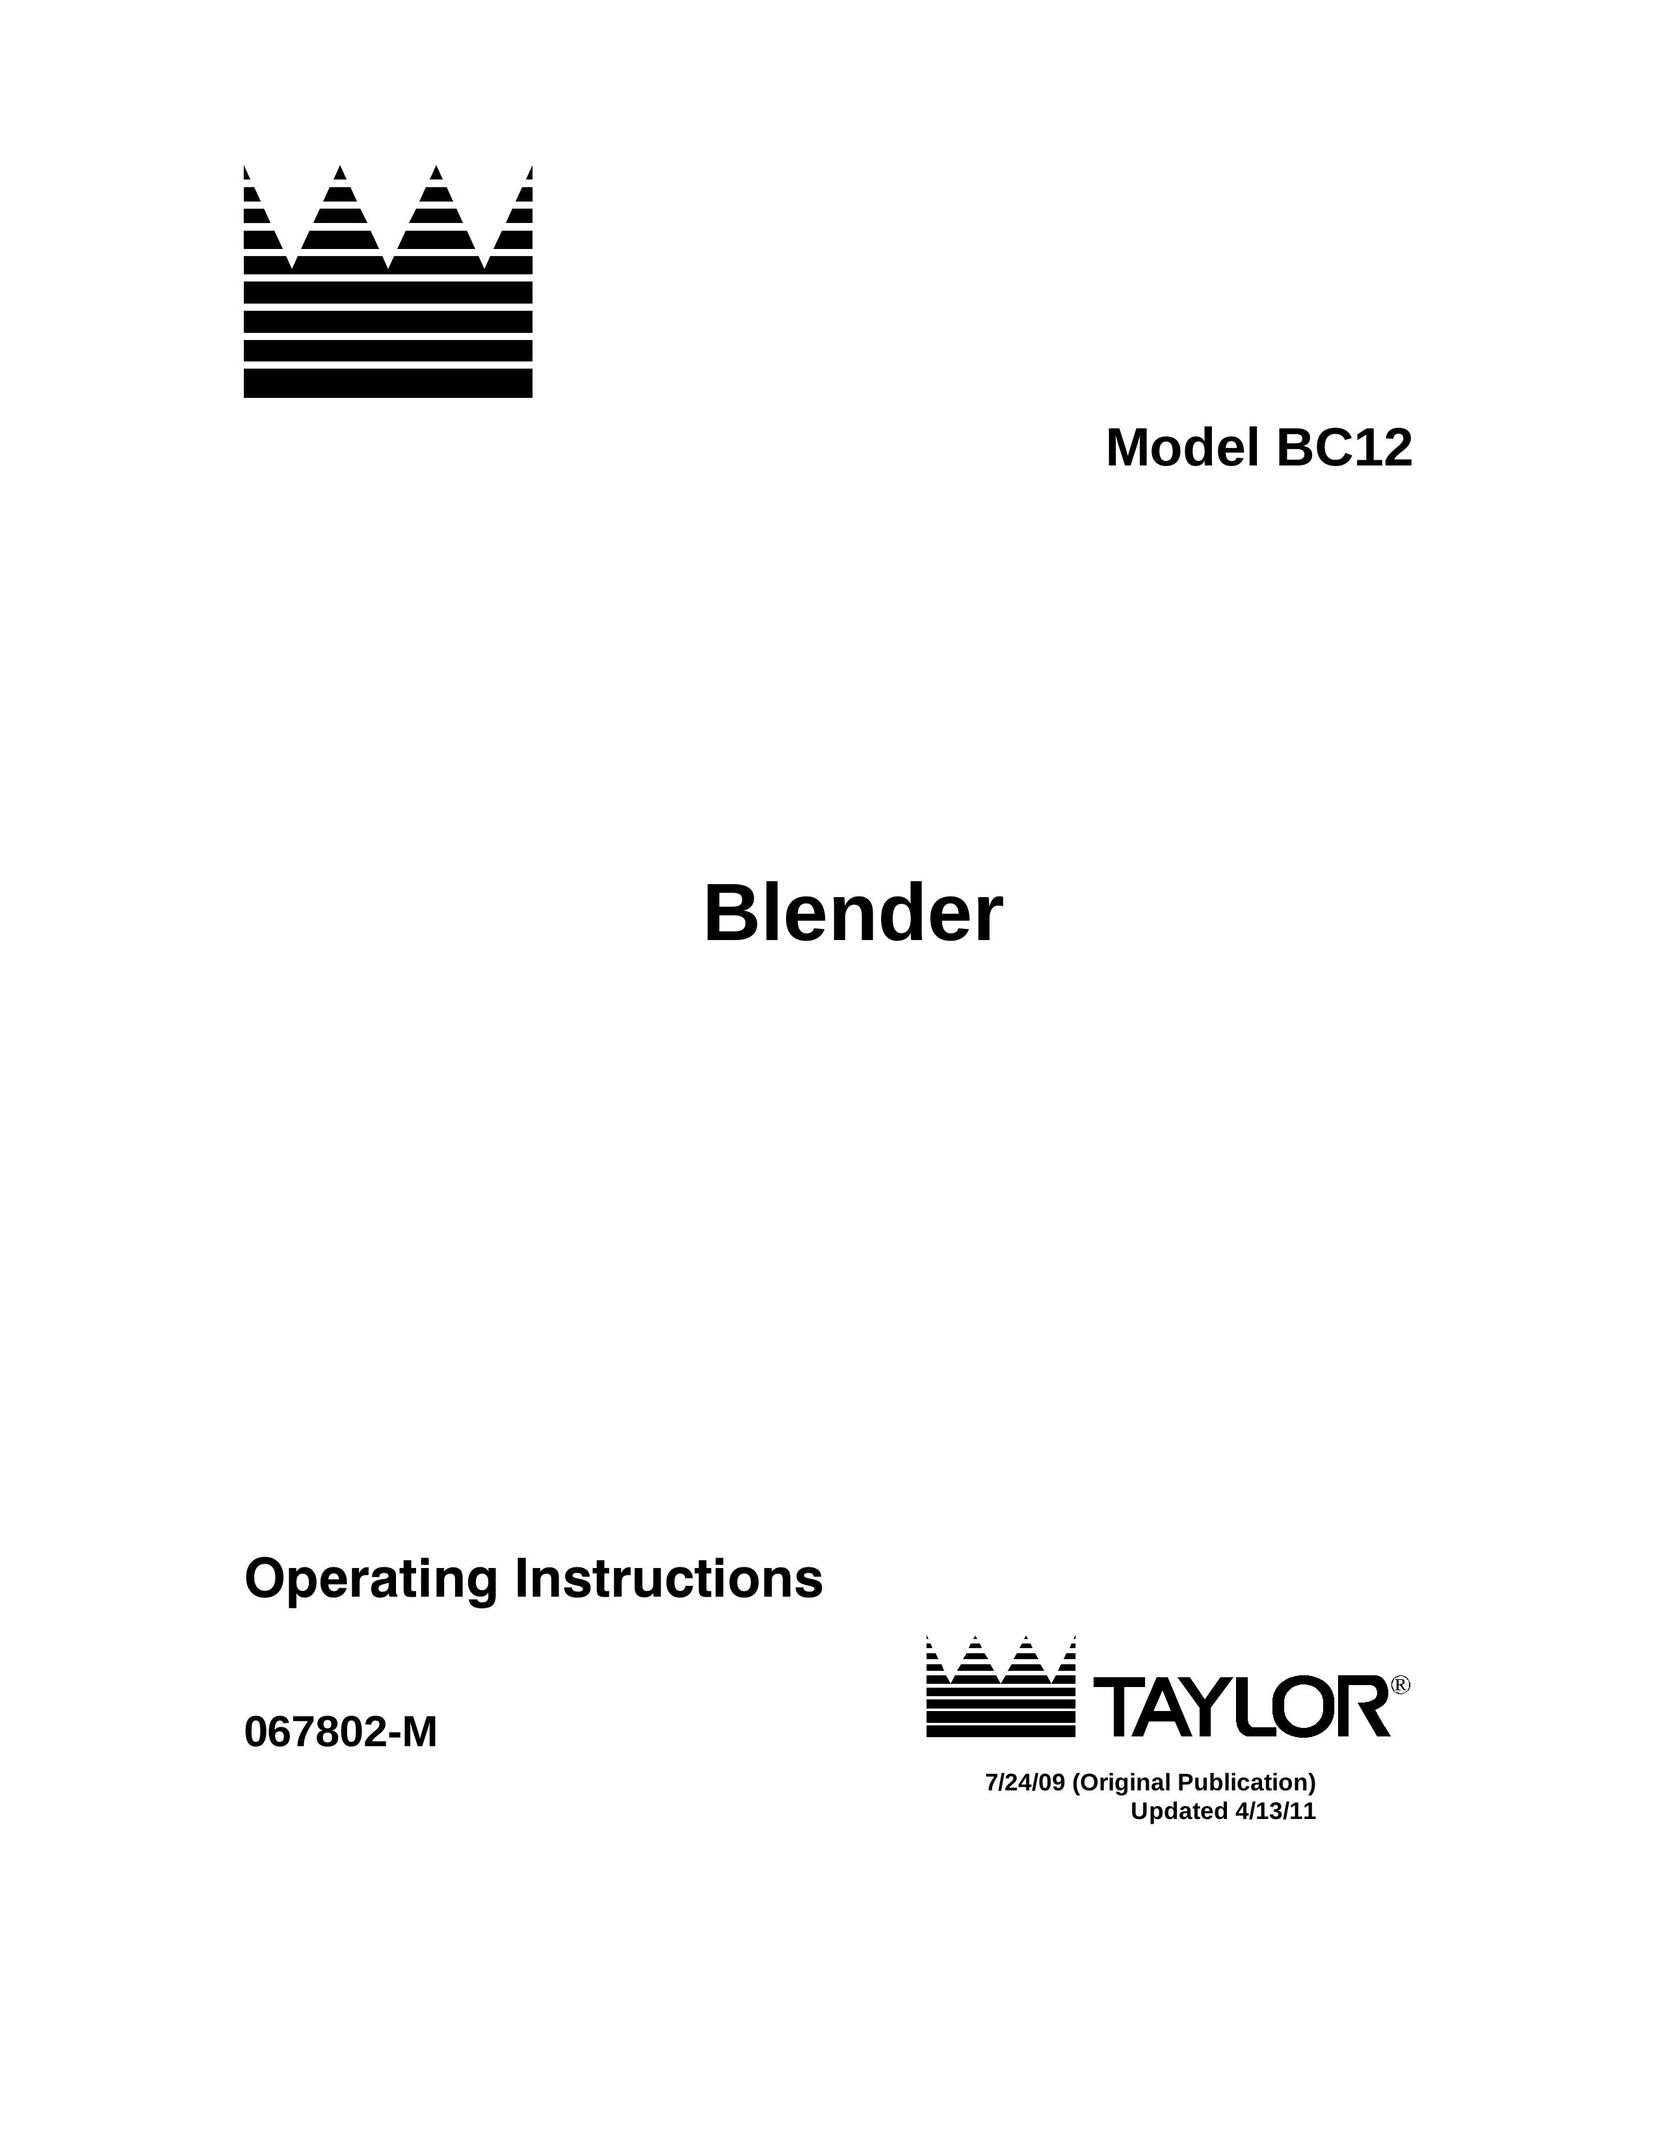 Taylor 067802-M Blender User Manual